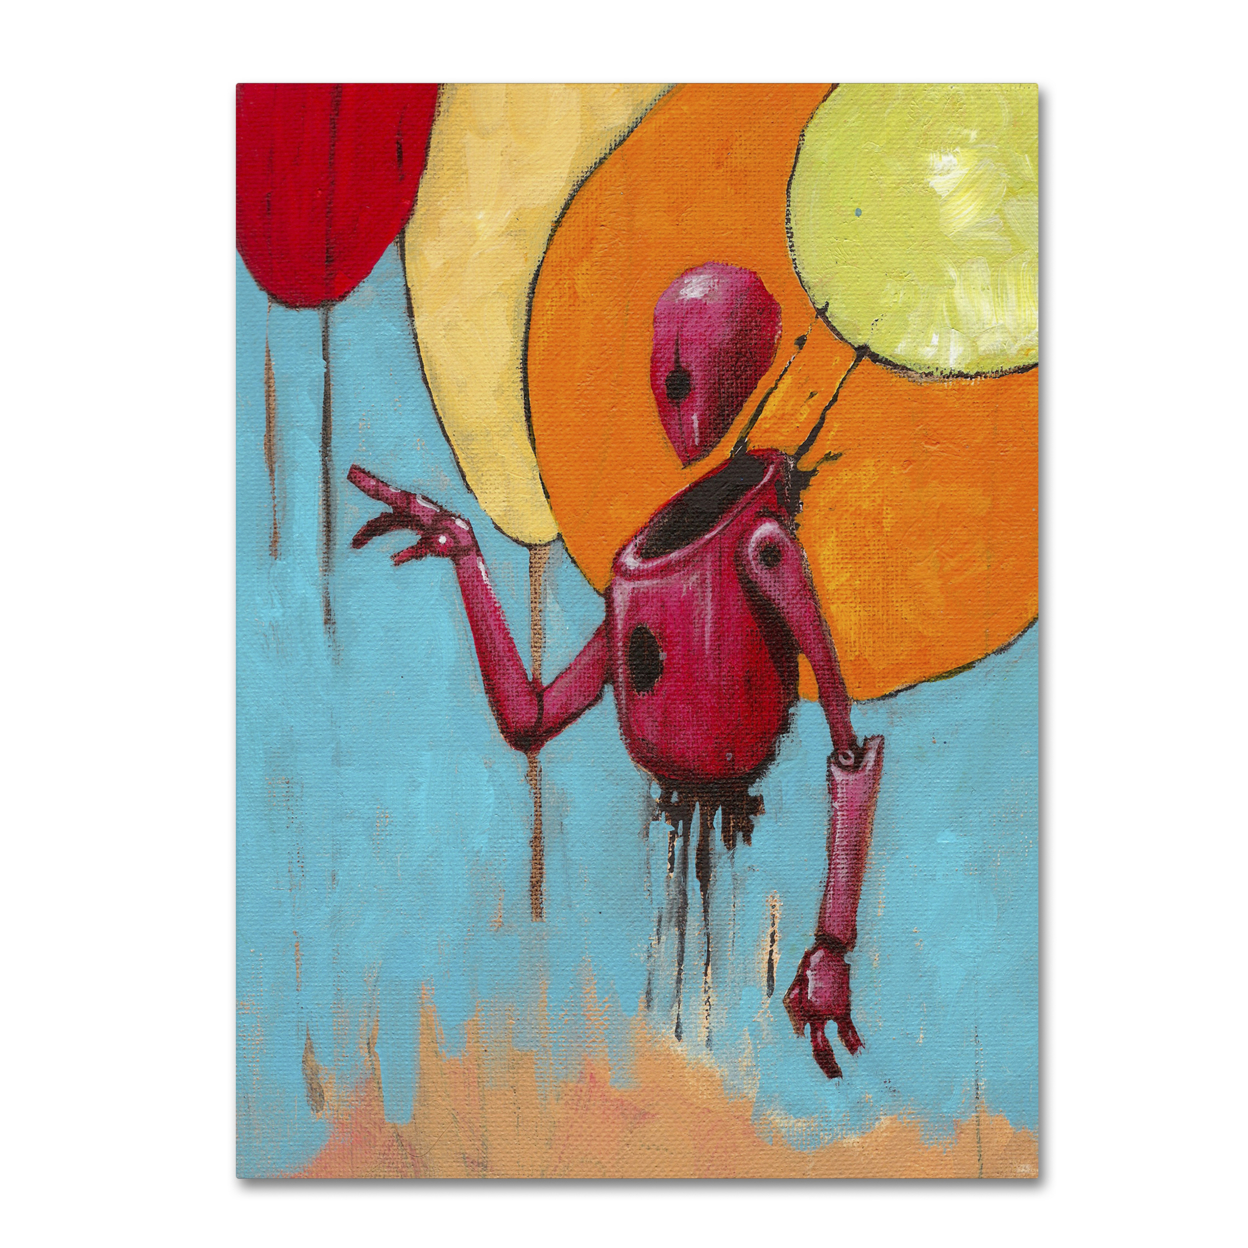 Craig Snodgrass 'Red Junk Robot' Canvas Art 18 X 24